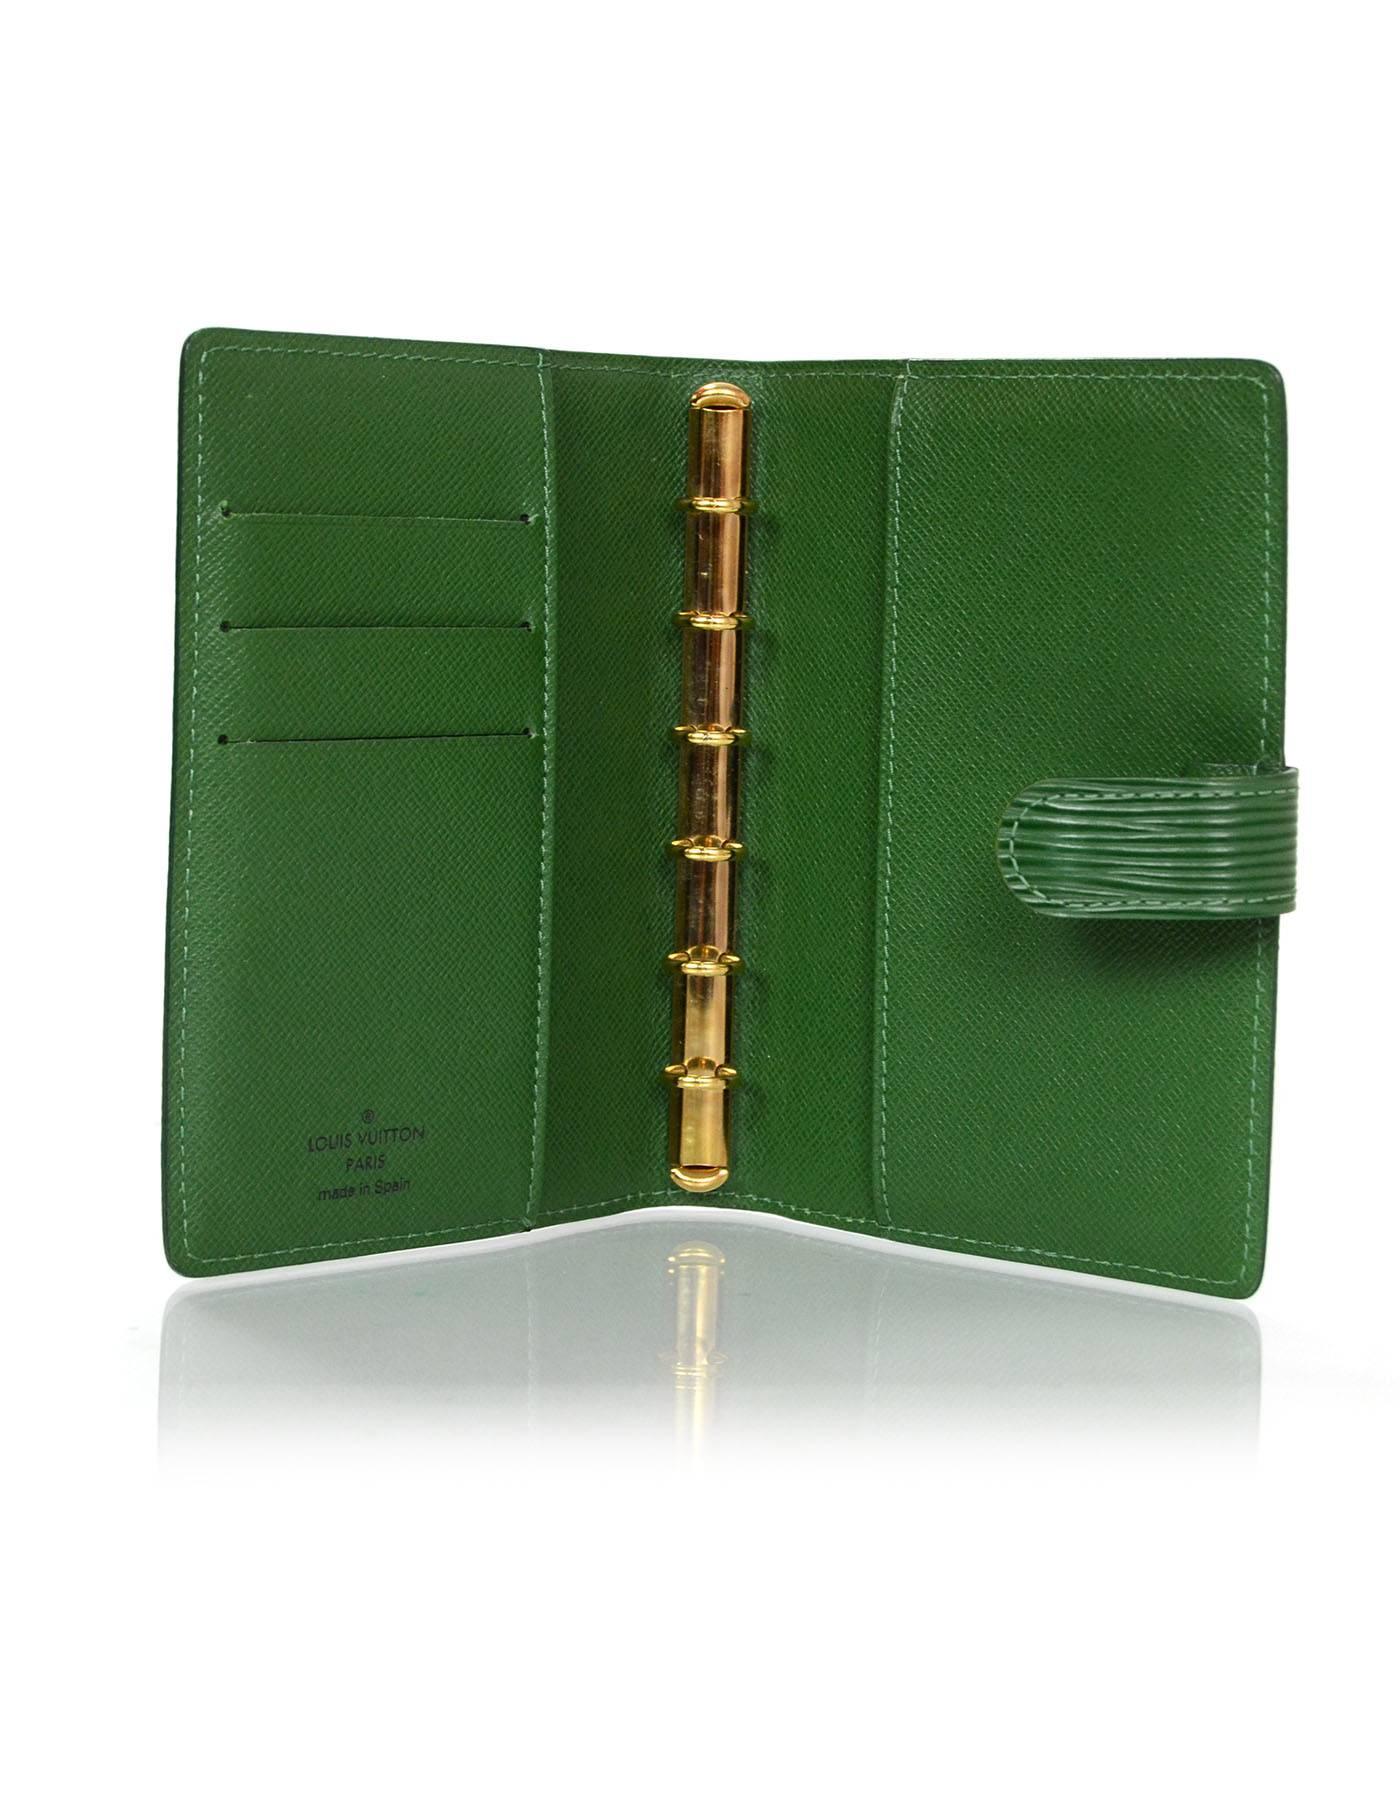 Louis Vuitton Green Epi Leather Agenda 1